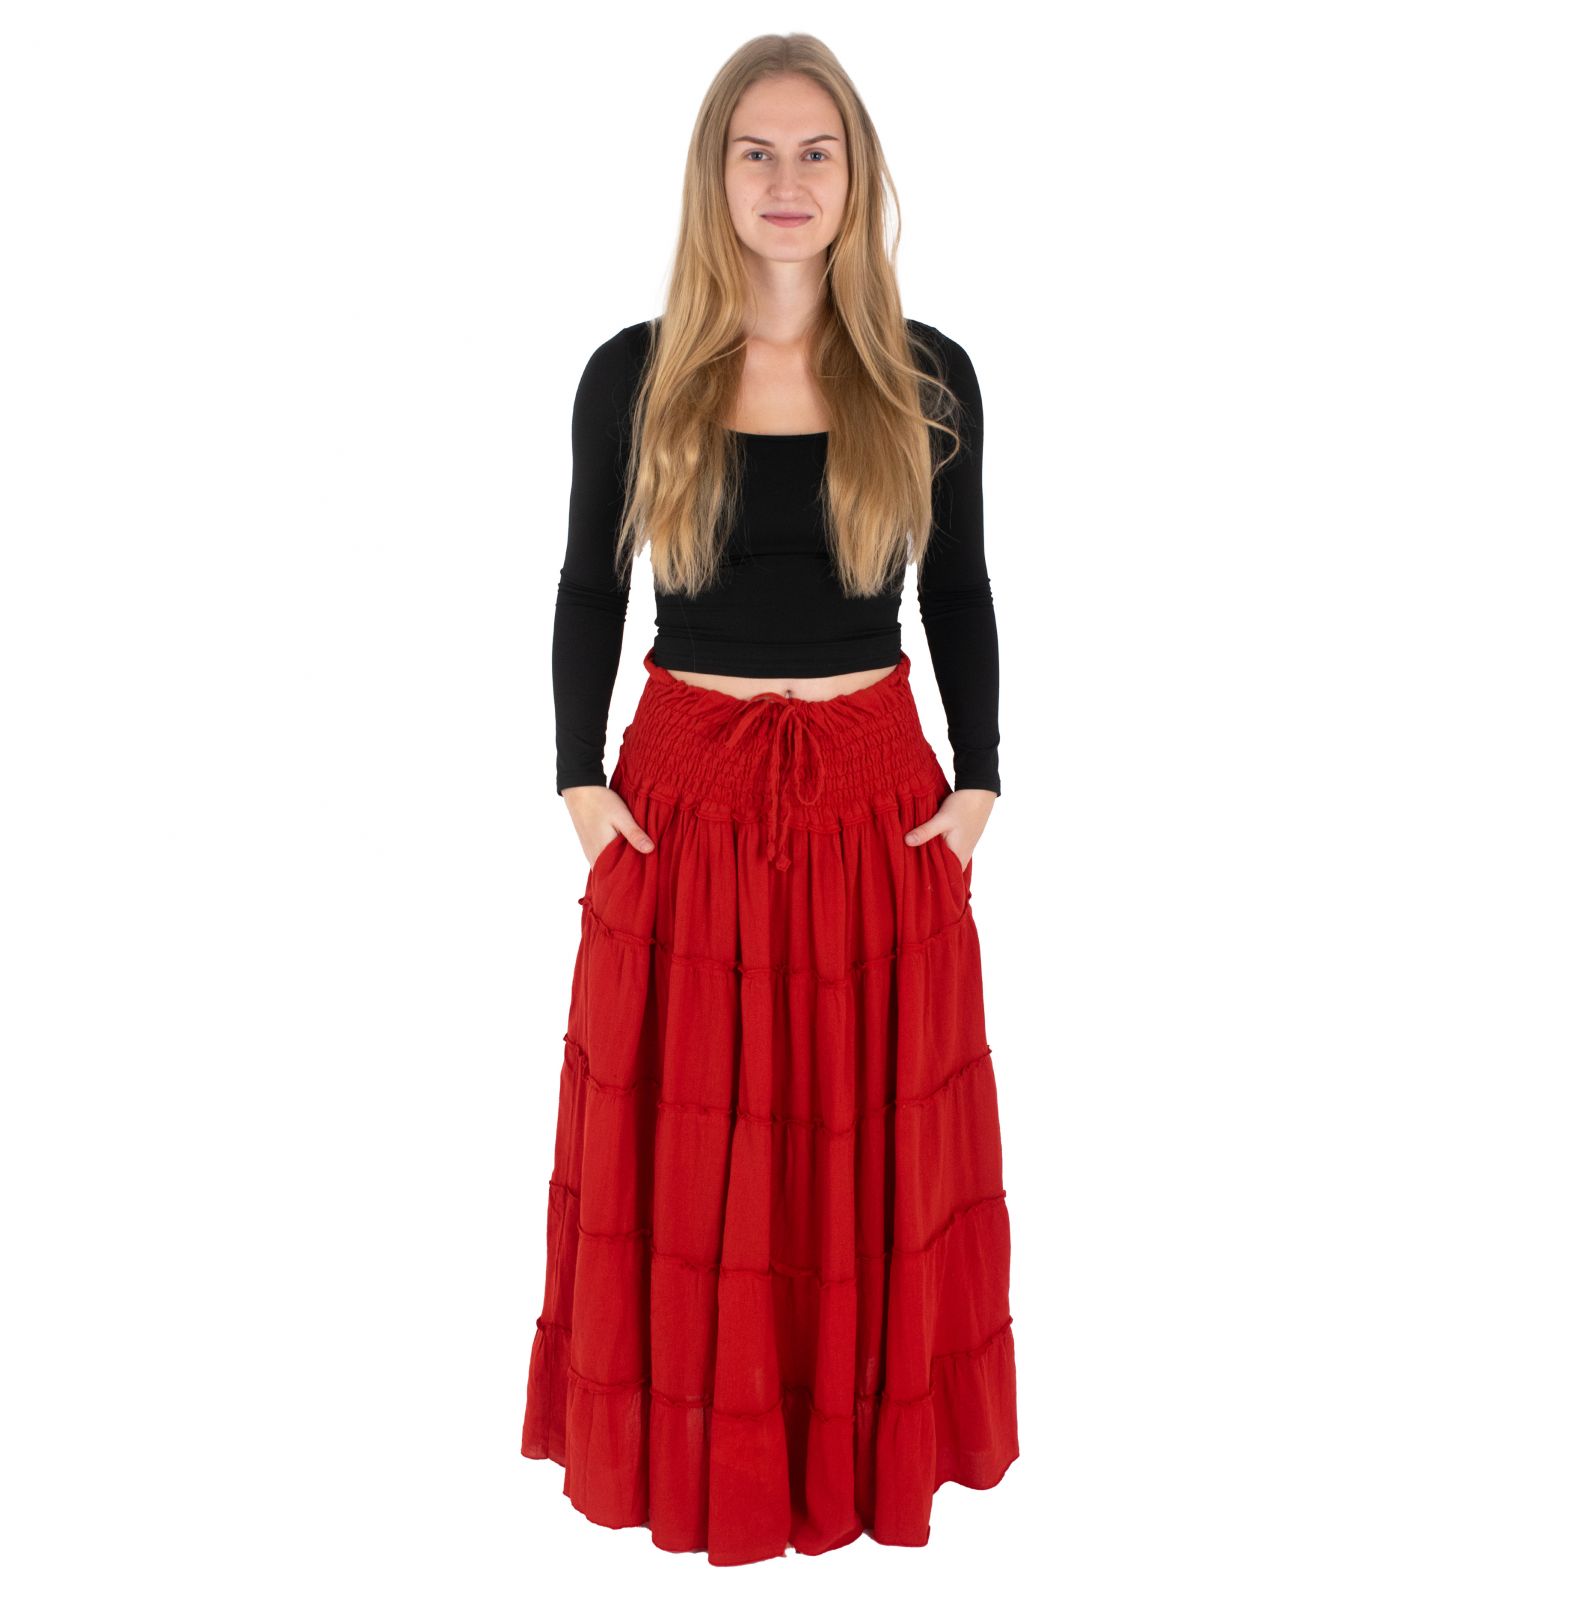 Długa spódnica etno / hippie Bhintuna Red czerwona Nepal